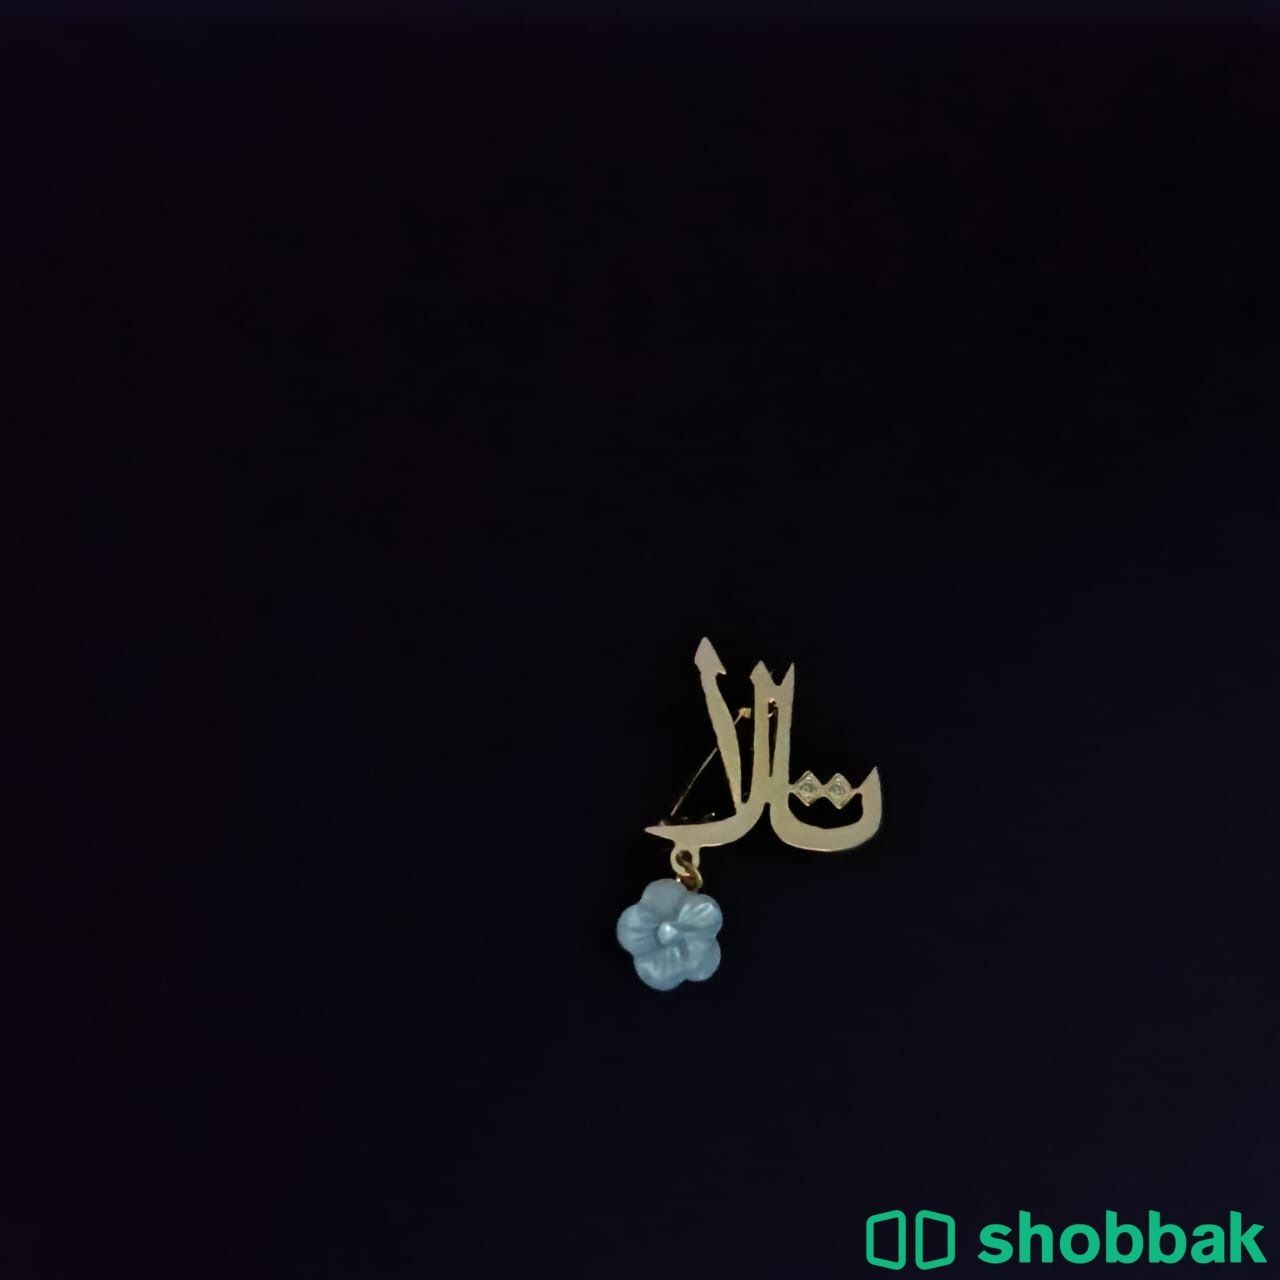 مطليات ذهب او فضة حسب الطلب  Shobbak Saudi Arabia